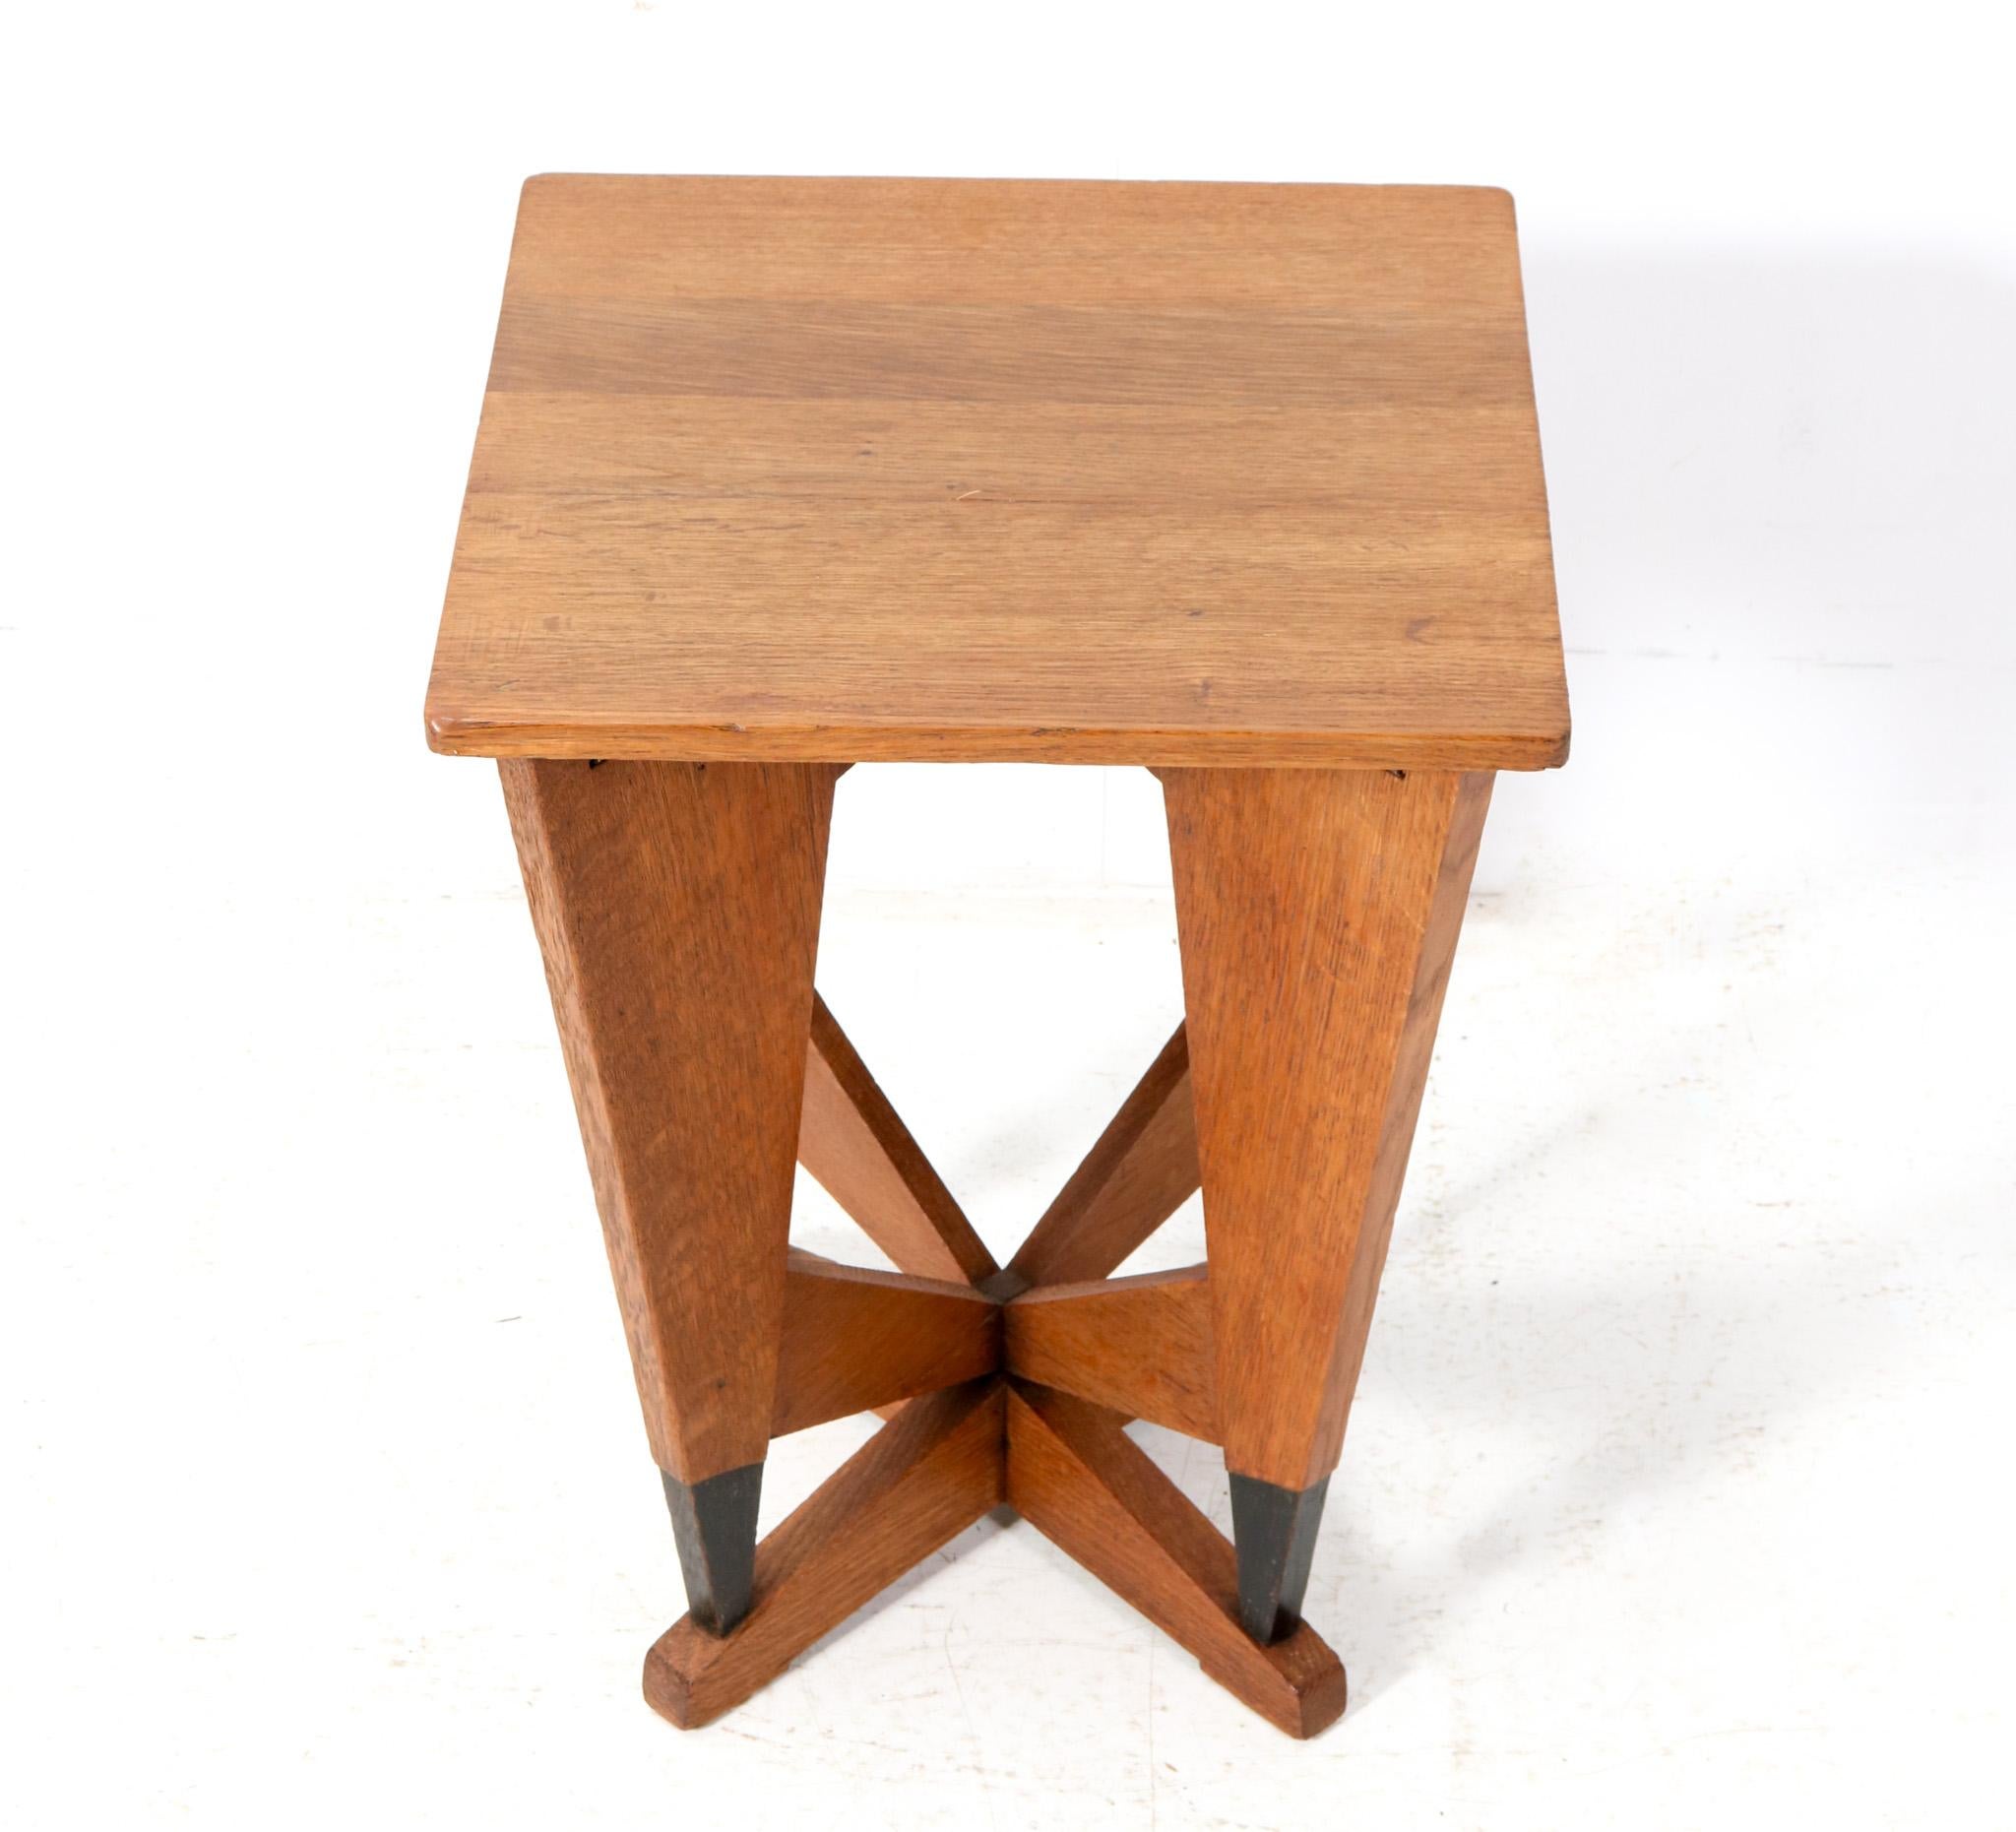 Oak Art Deco Modernist Side Table by P.E.L. Izeren for De Genneper Molen, 1920s For Sale 2